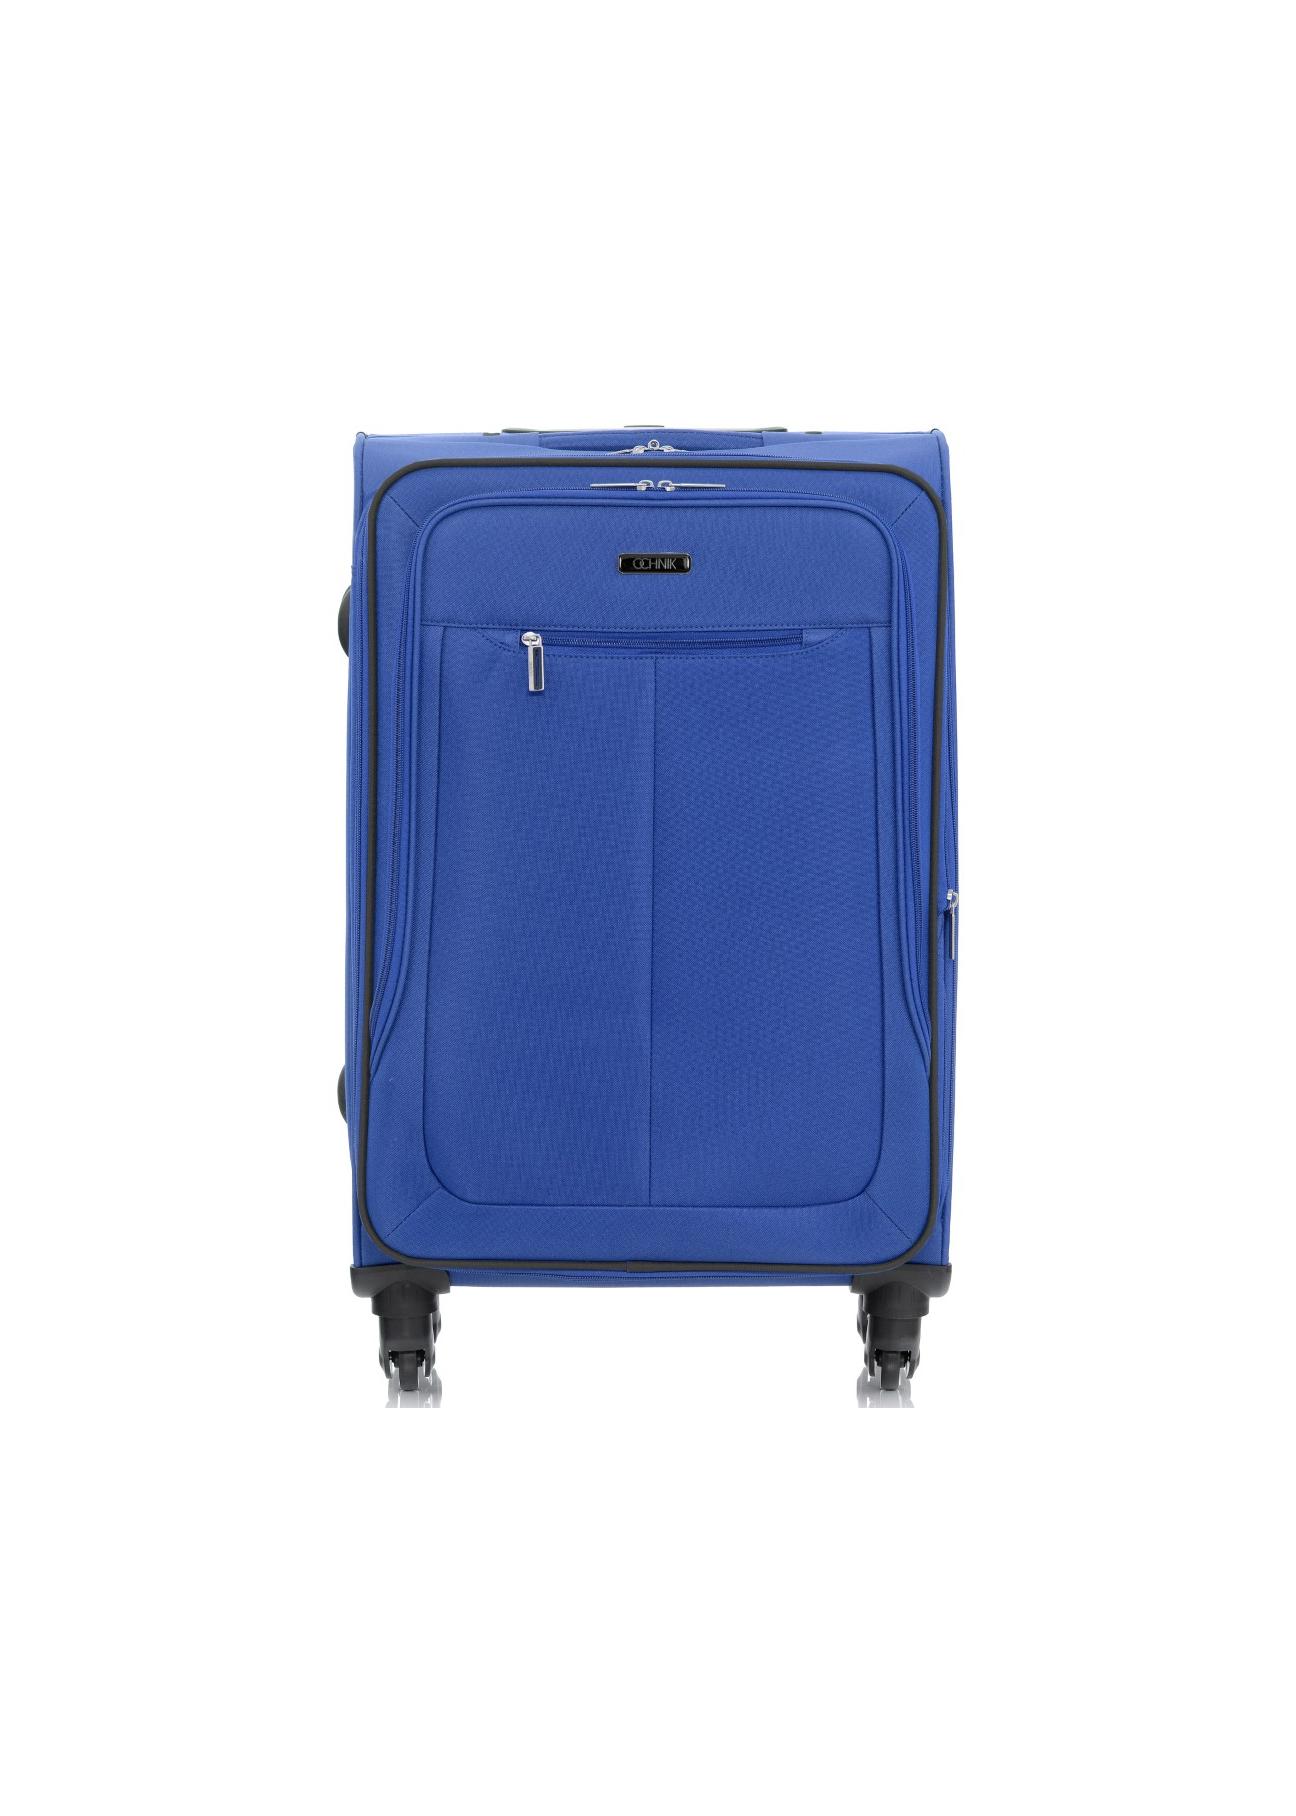 Duża walizka na kółkach WALNY-0019-61-28(W17)